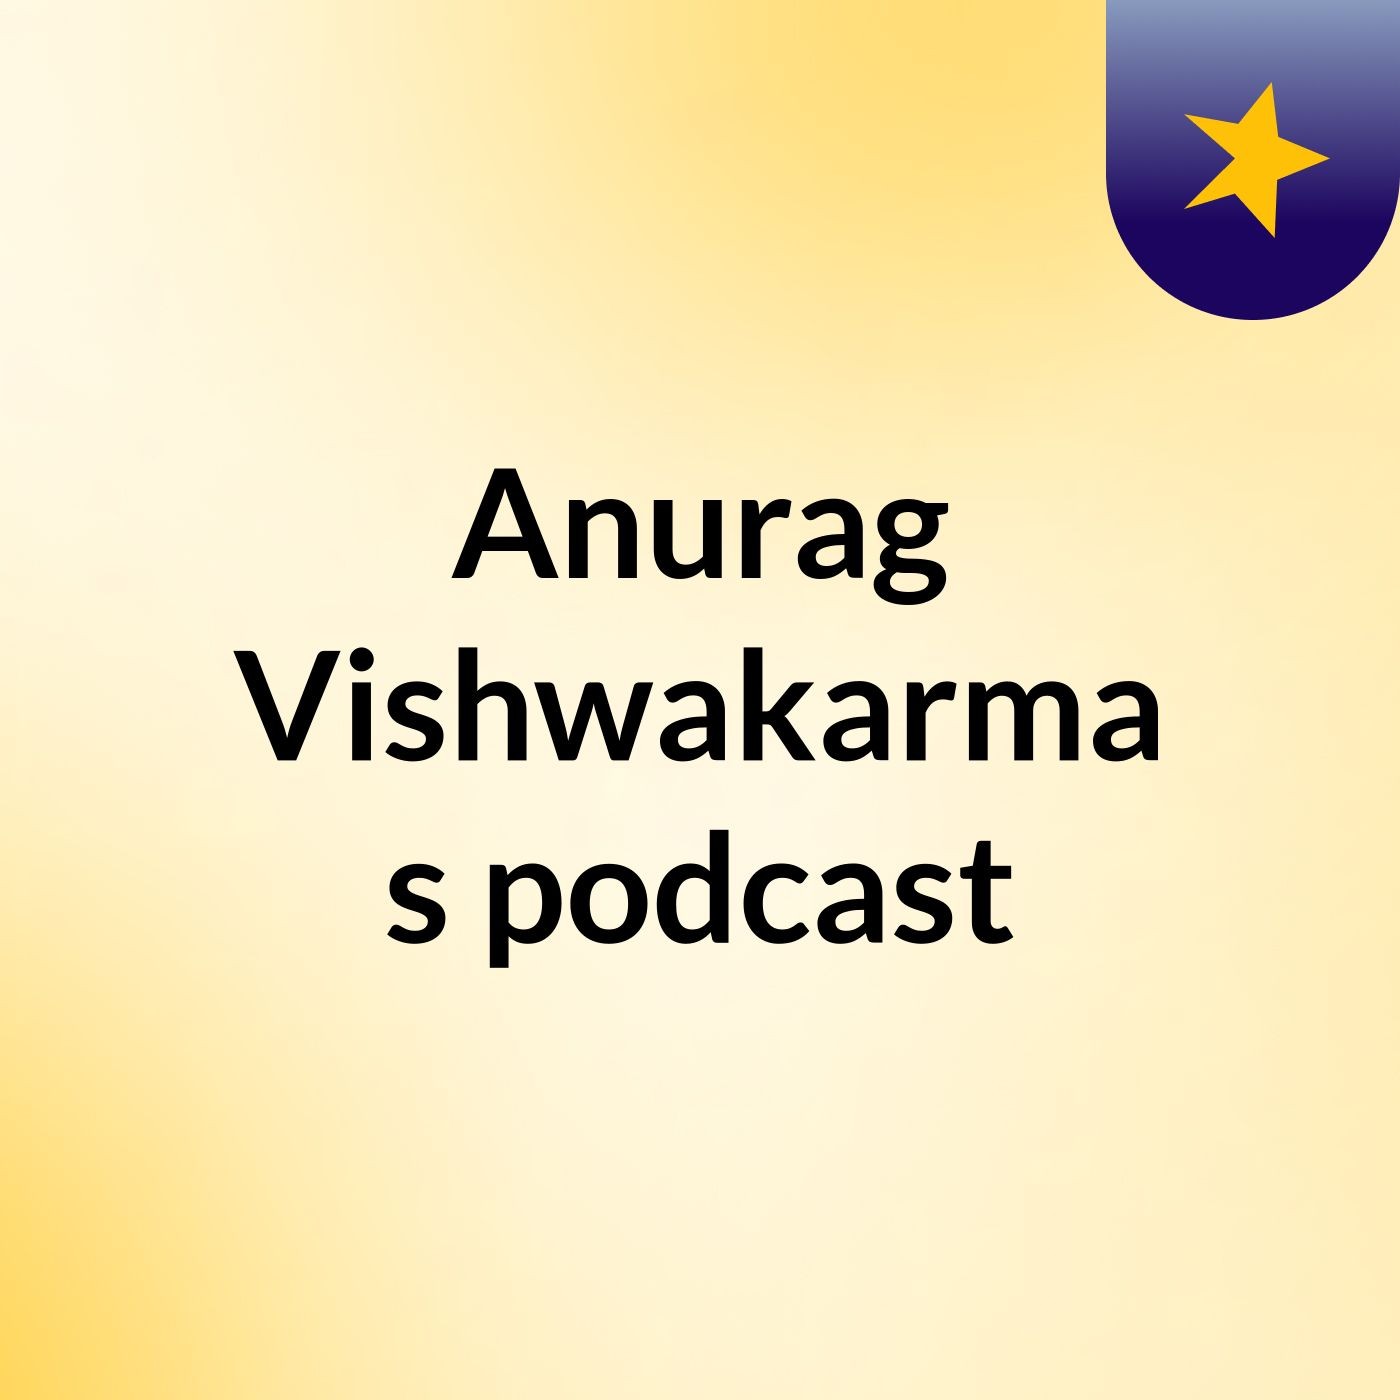 Anurag Vishwakarma's podcast